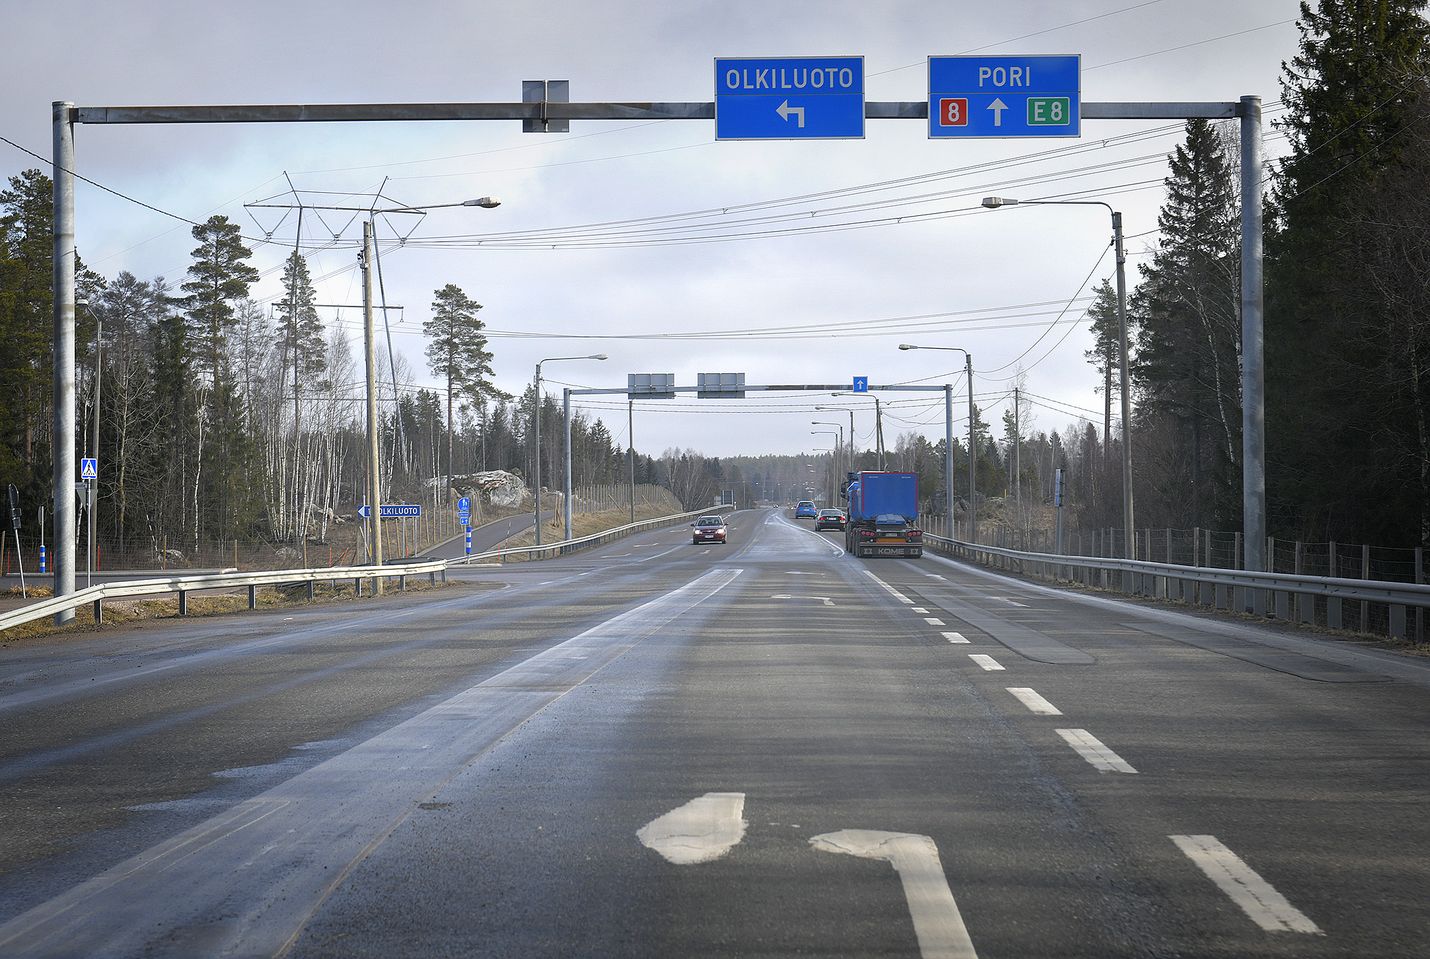 Rauman ja Eurajoen välinen osuus valtatie 8:sta mahdollisesti nelikaistaistetaan. Mukana suunnitelmissa on myös eritasoliittymä Olkiluodontien risteykseen.